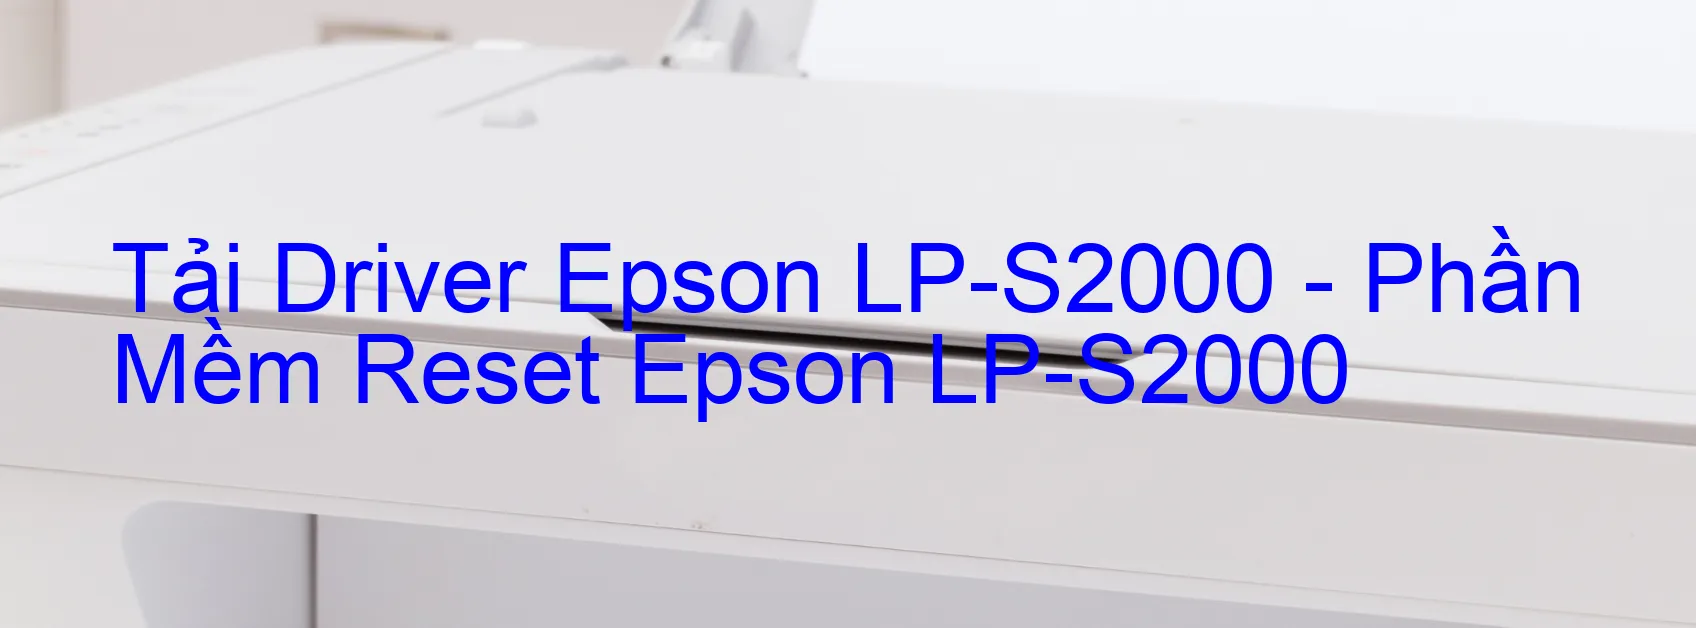 Driver Epson LP-S2000, Phần Mềm Reset Epson LP-S2000